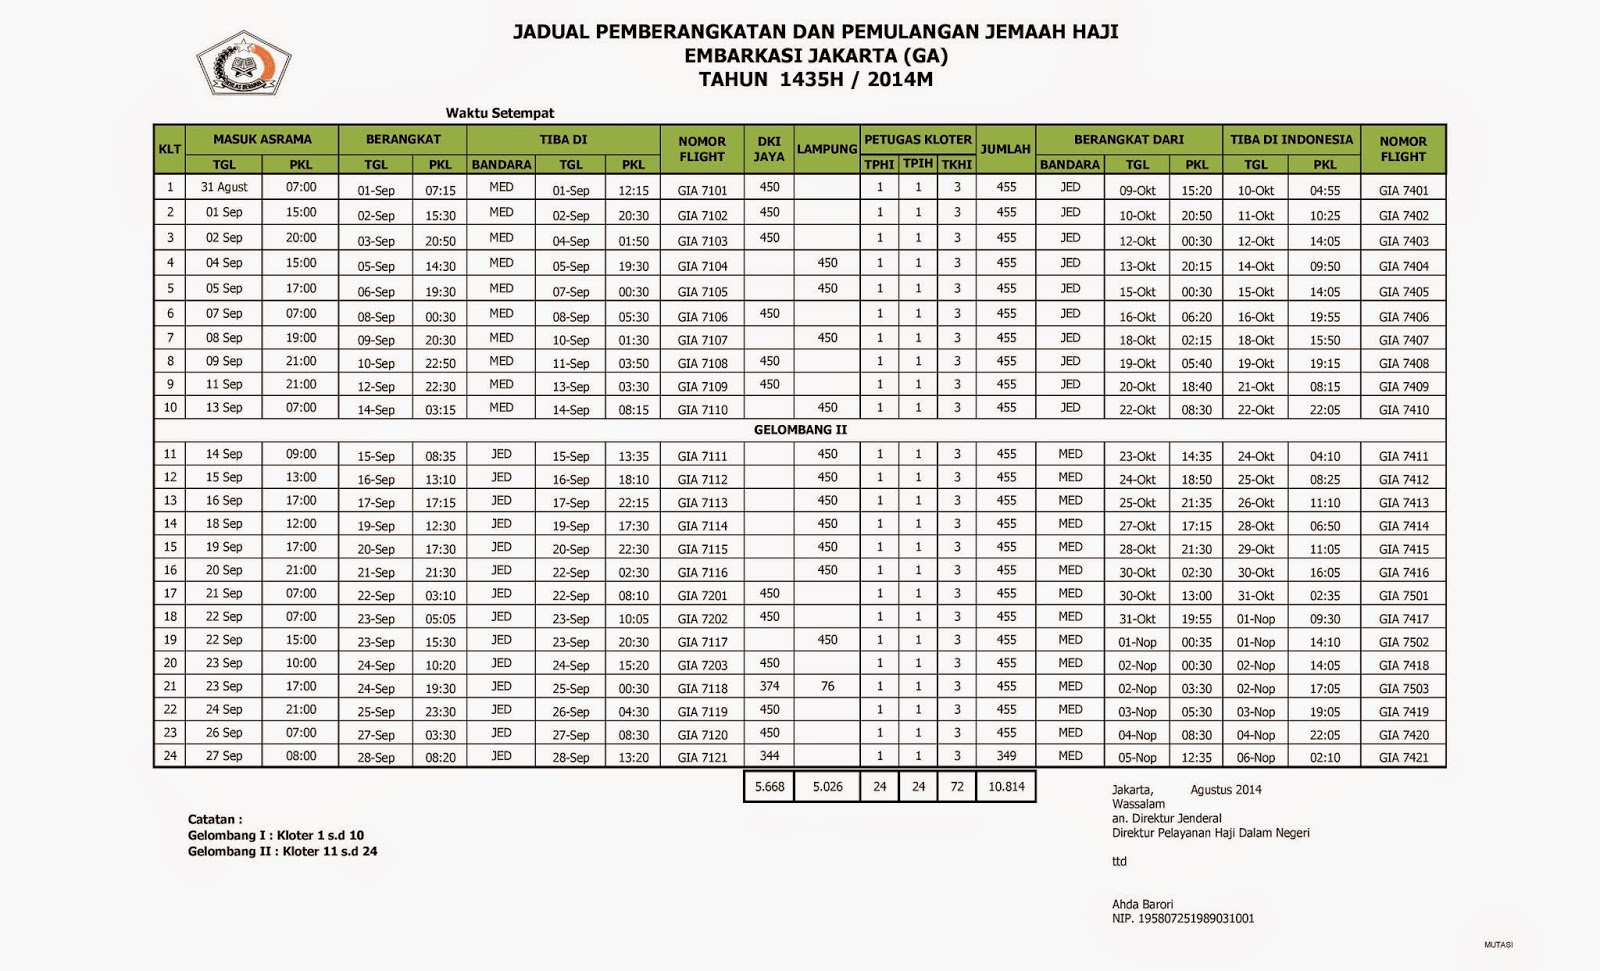 Jadwal Pemulangan Haji Asal Jakarta